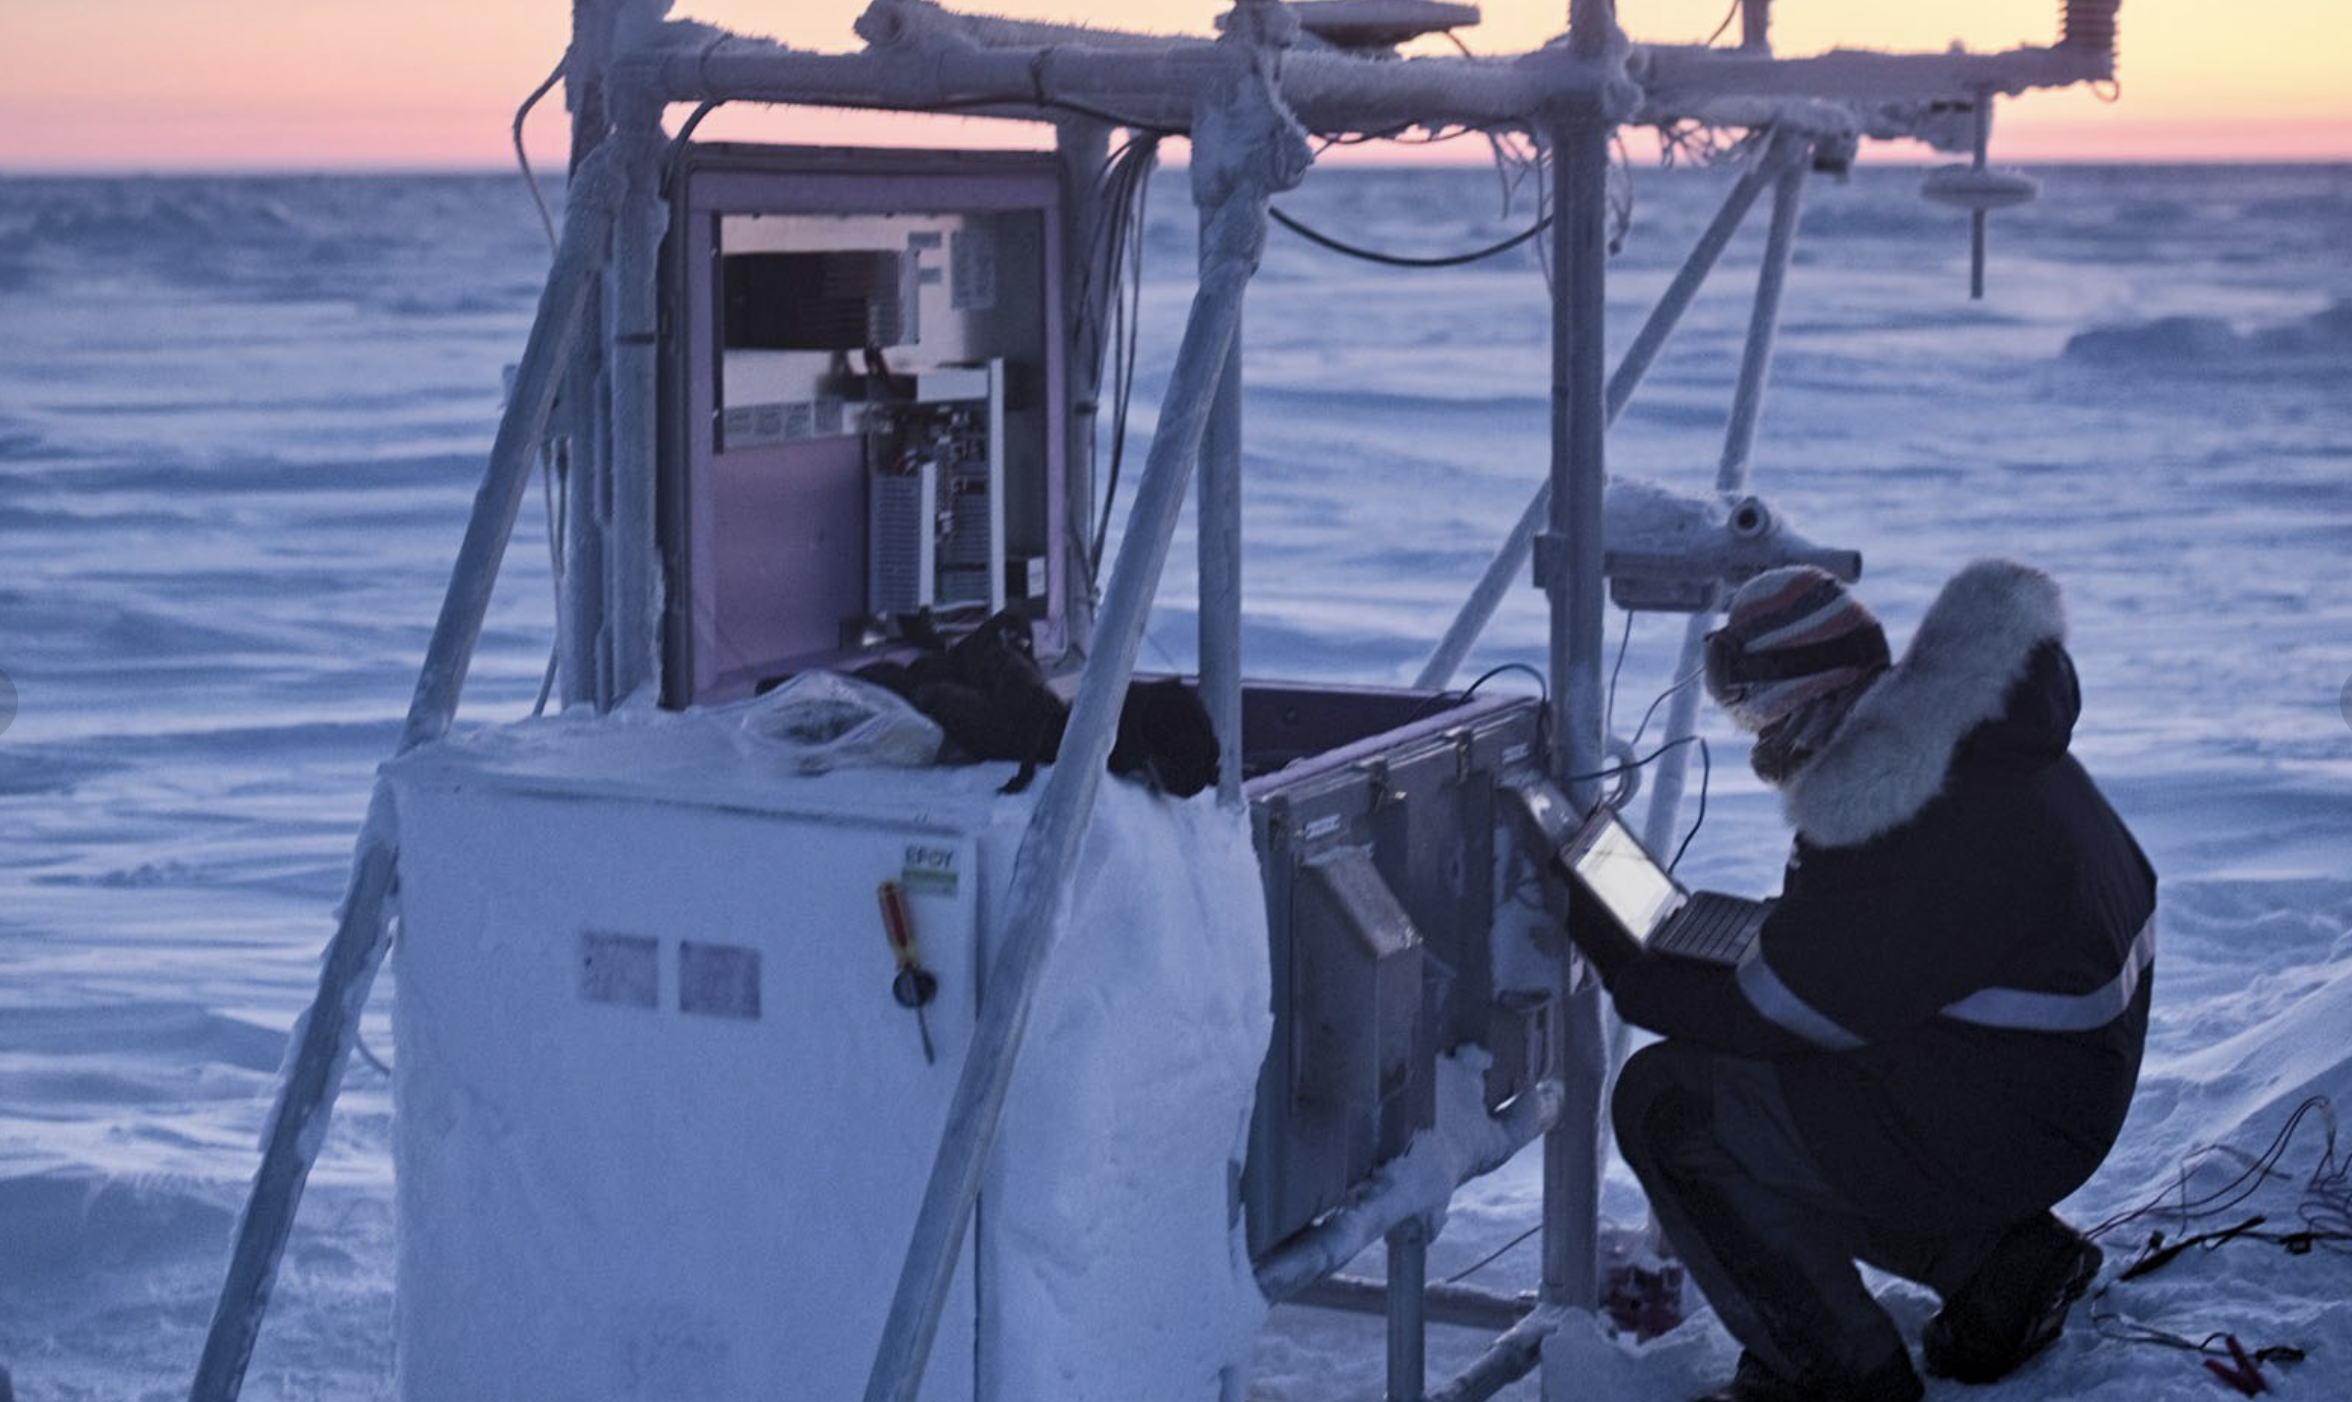 Nautical twilight in the Arctic